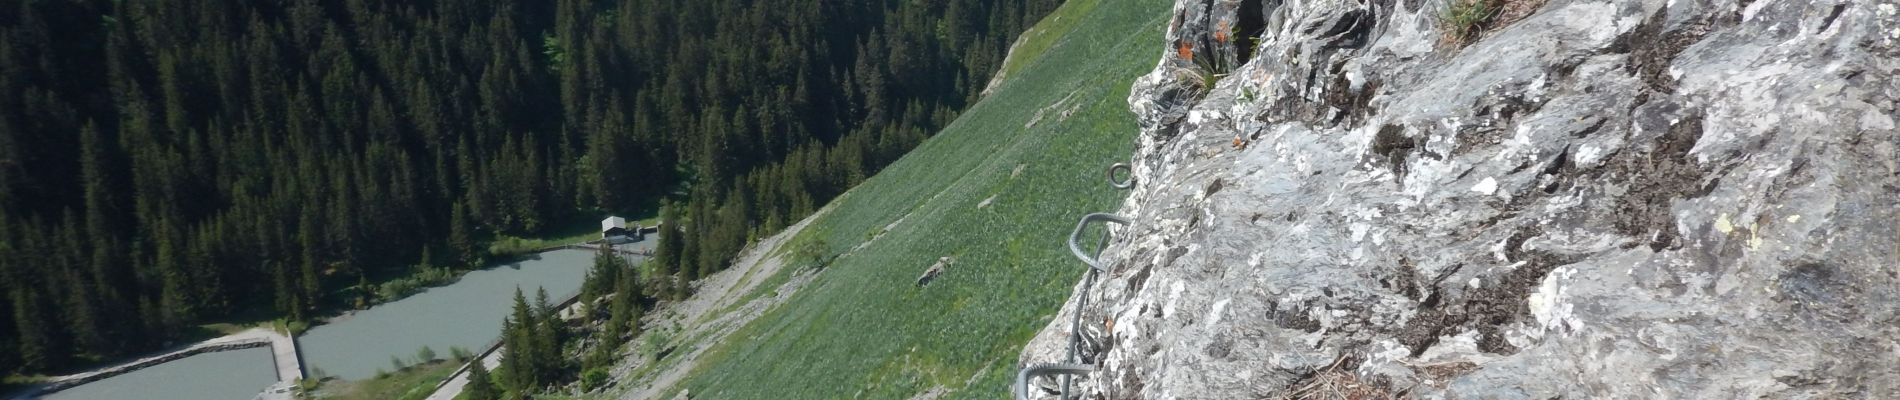 Tour Klettersteig Champagny-en-Vanoise - Via ferrata Plan de Bouc - Photo